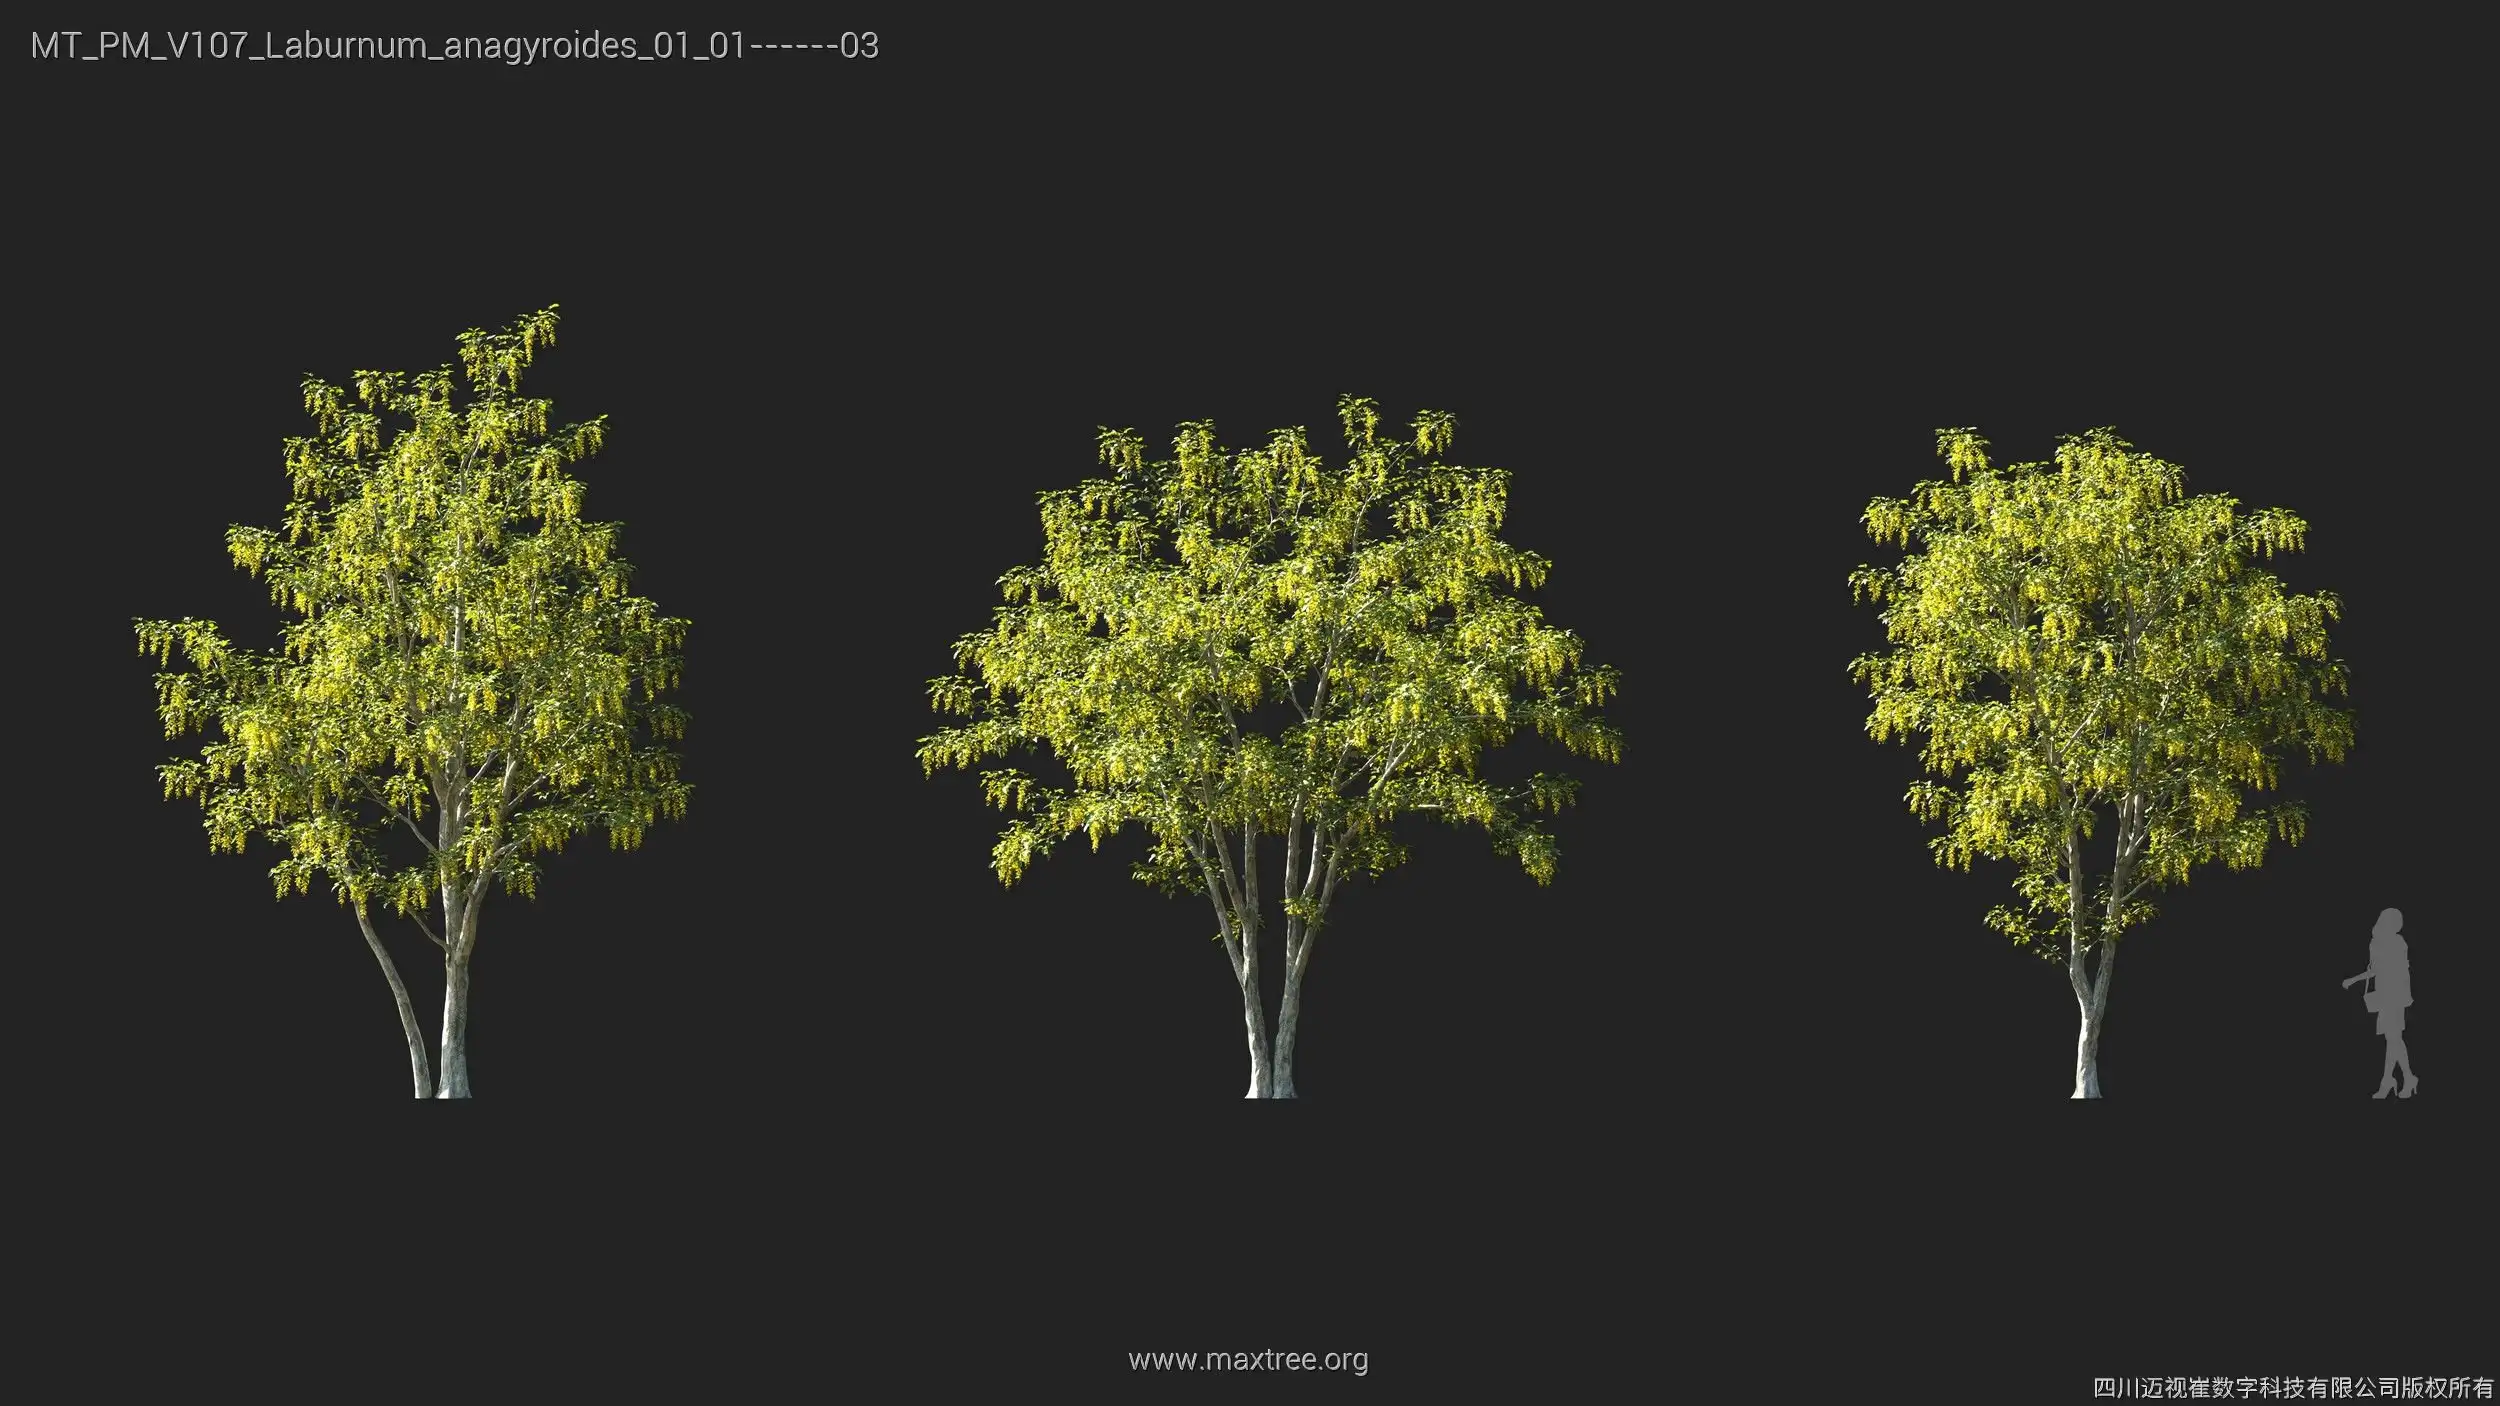 دانلود 72 مدل سه بعدی درخت - 16